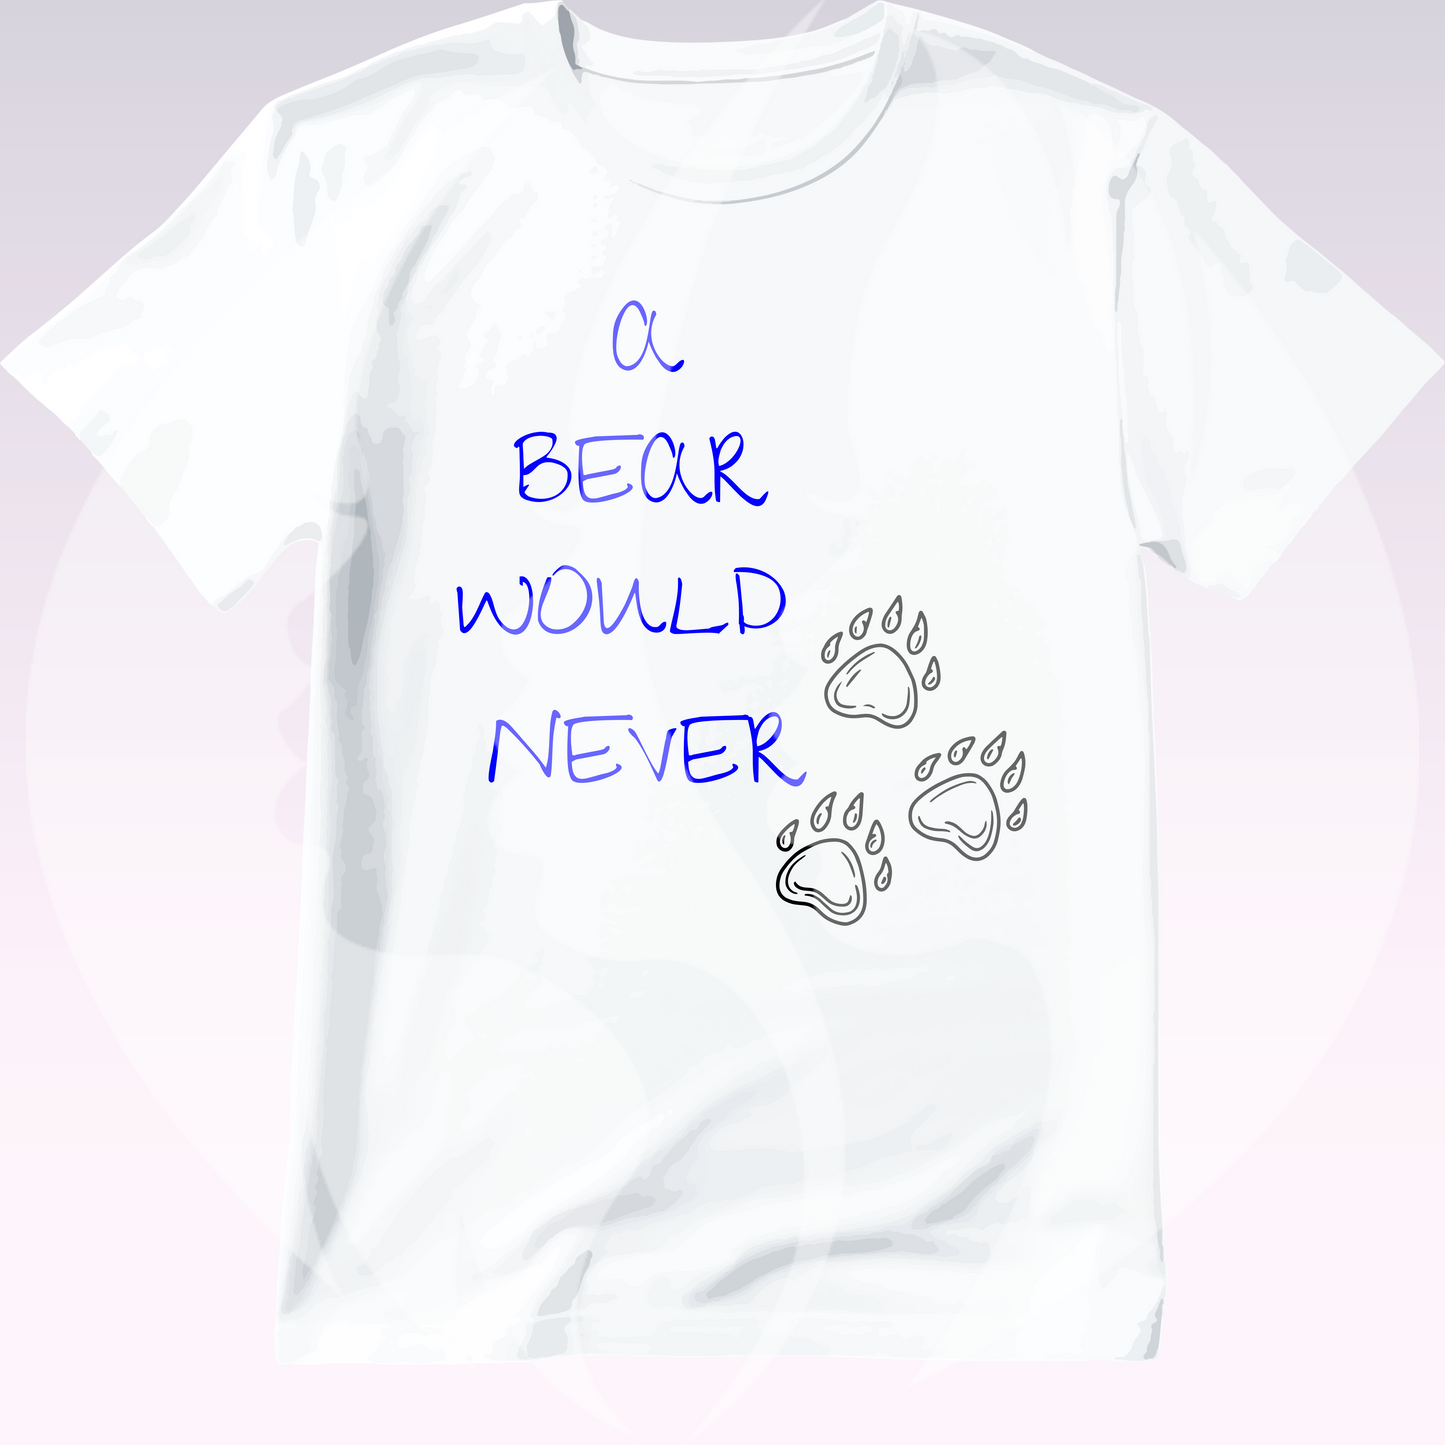 Bear Would Never T-shirt